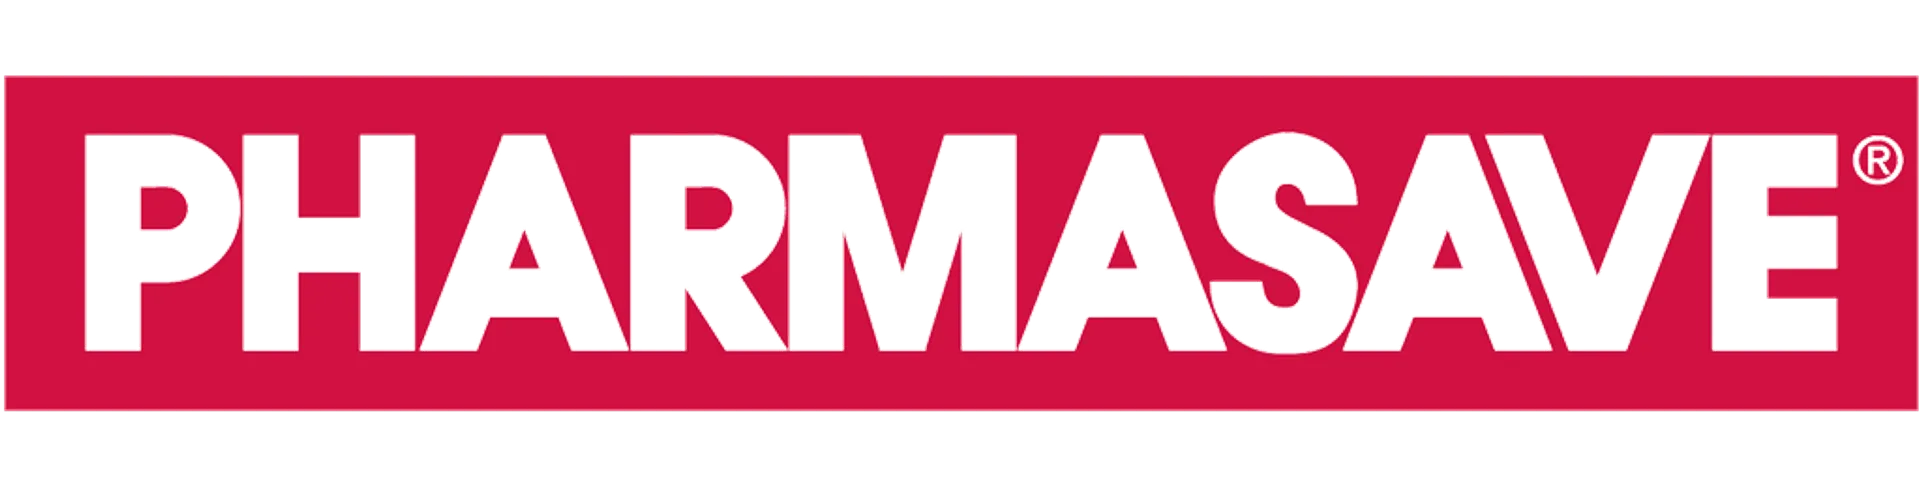 PHARMASAVE logo